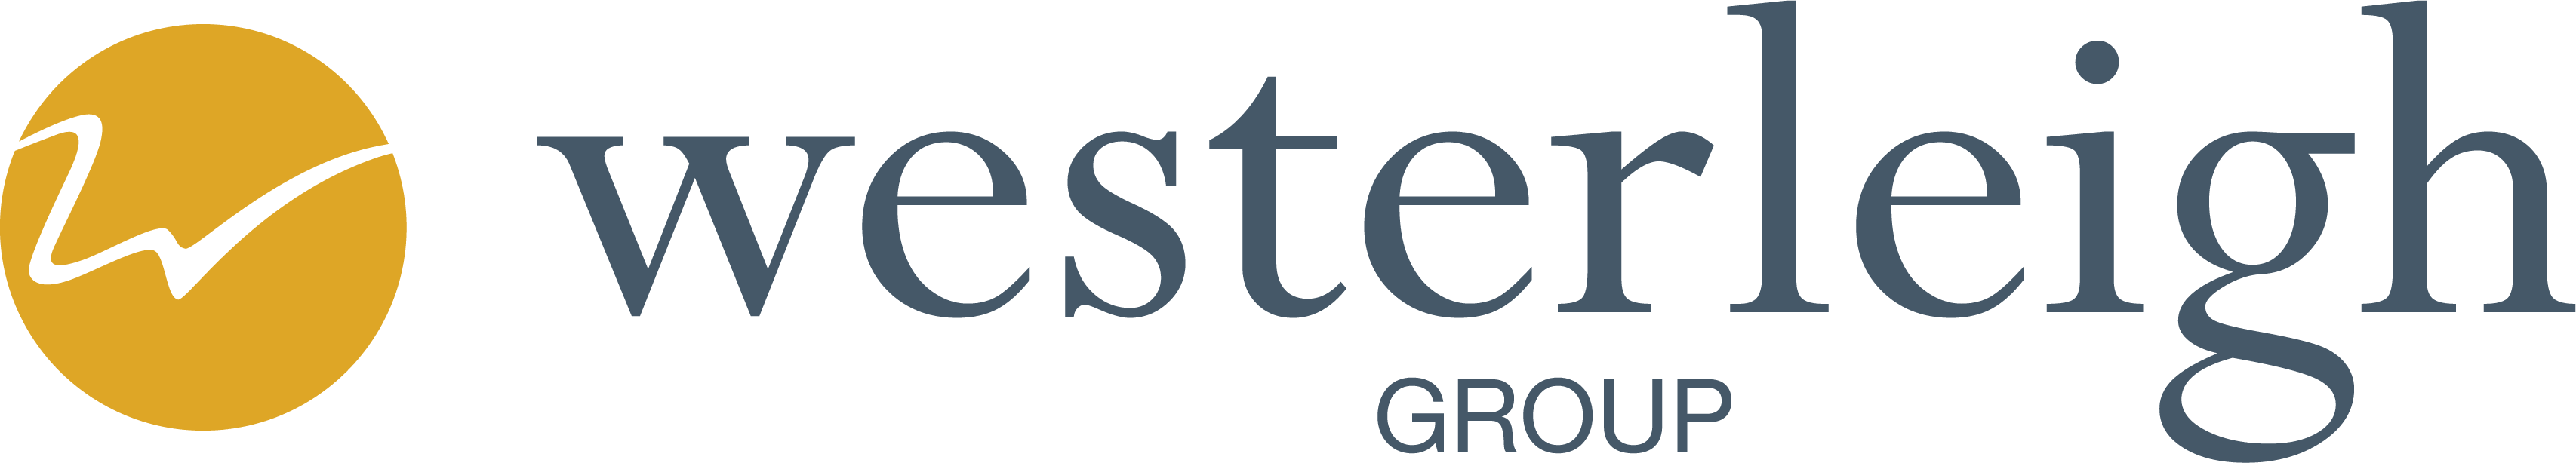 Westerleigh logo.